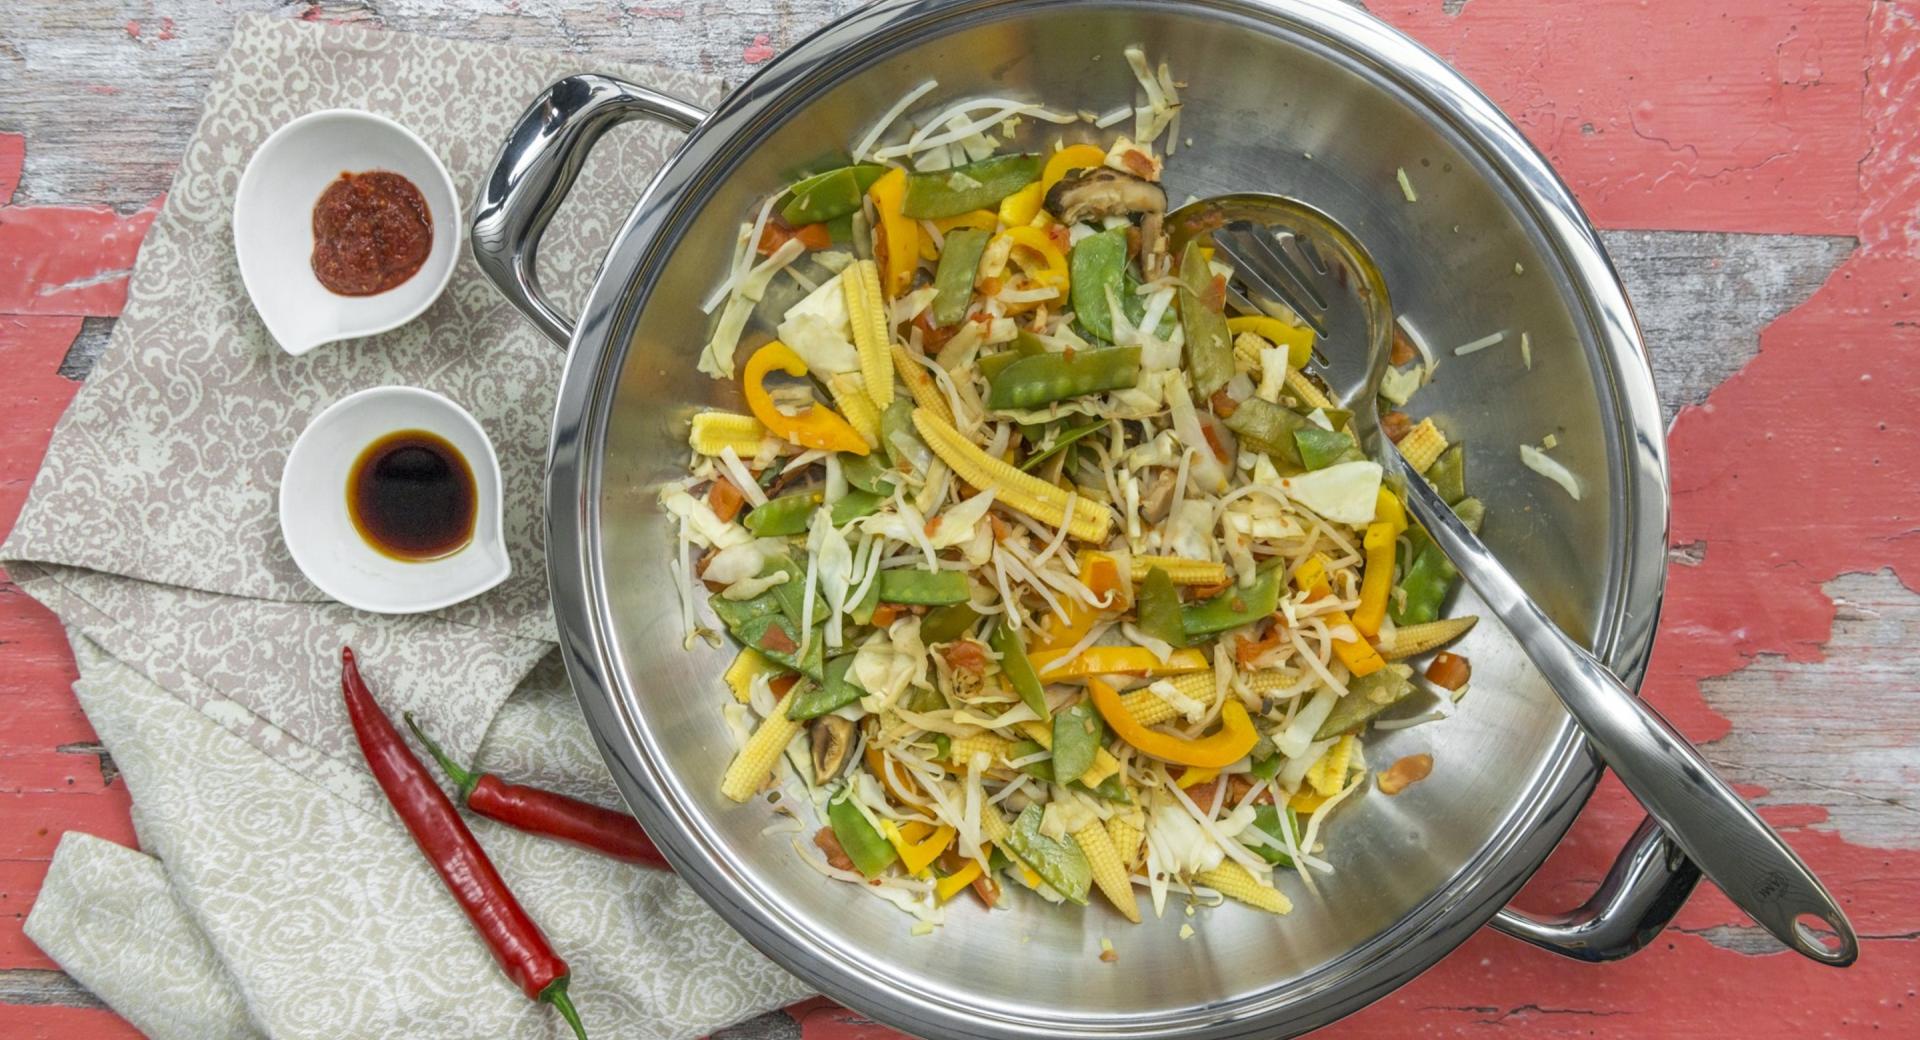 Platos asiáticos más sanos y sabrosos con este wok de Bra, ahora